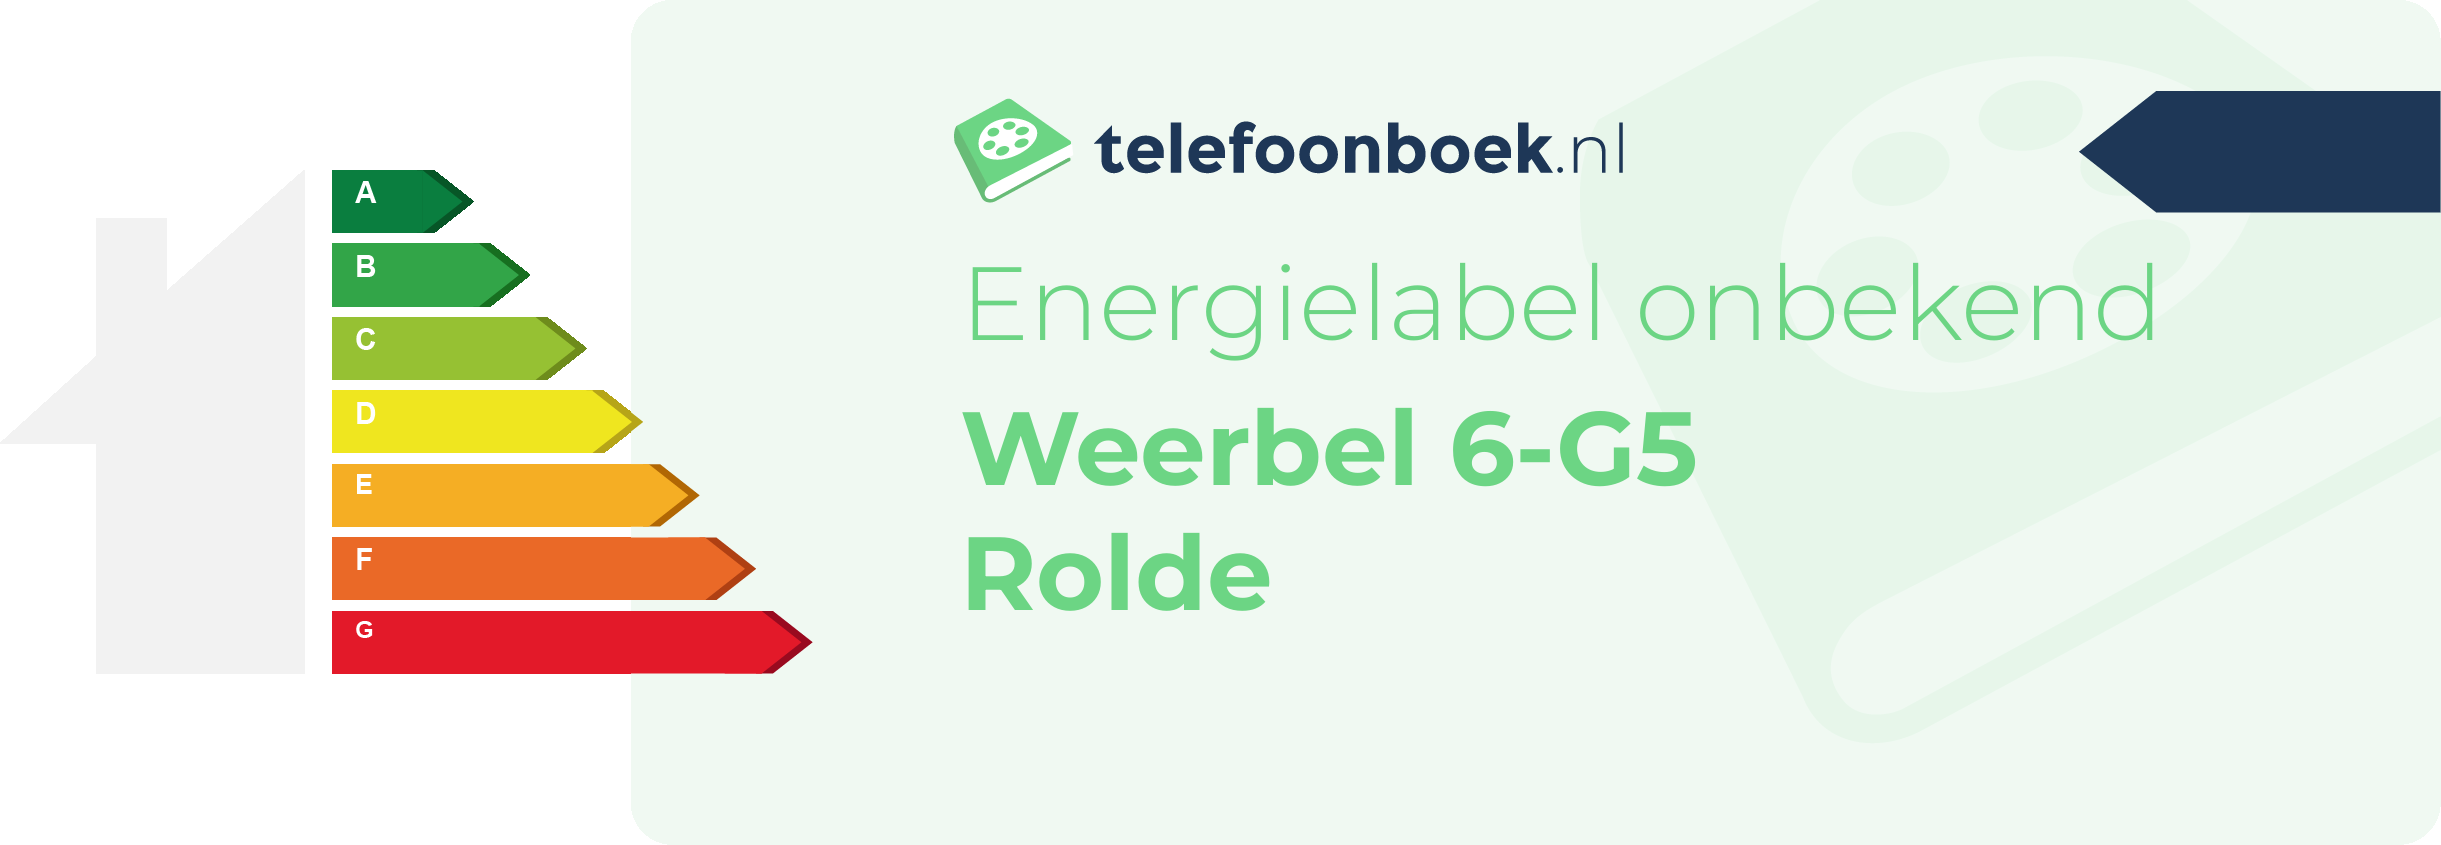 Energielabel Weerbel 6-G5 Rolde